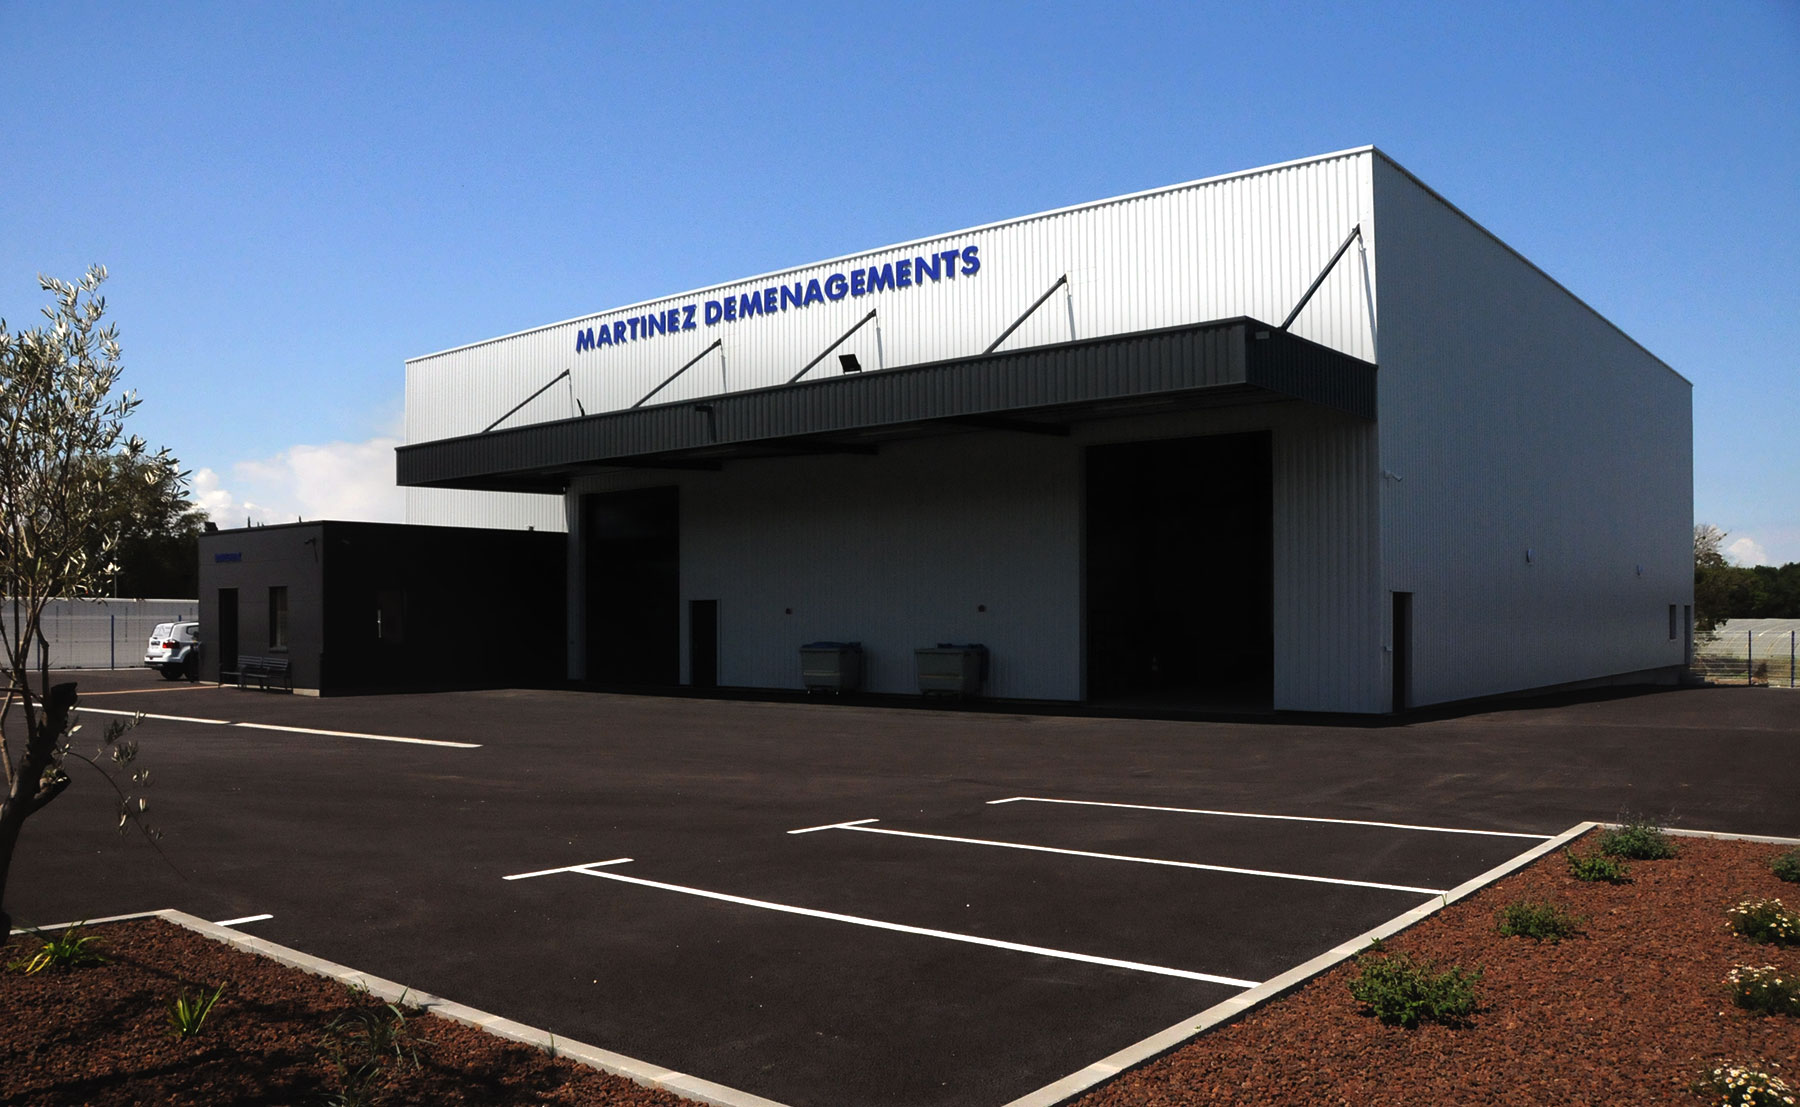 MARTINEZ DÉMÉNAGEMENT - Bâtiment industriel et entrepôt